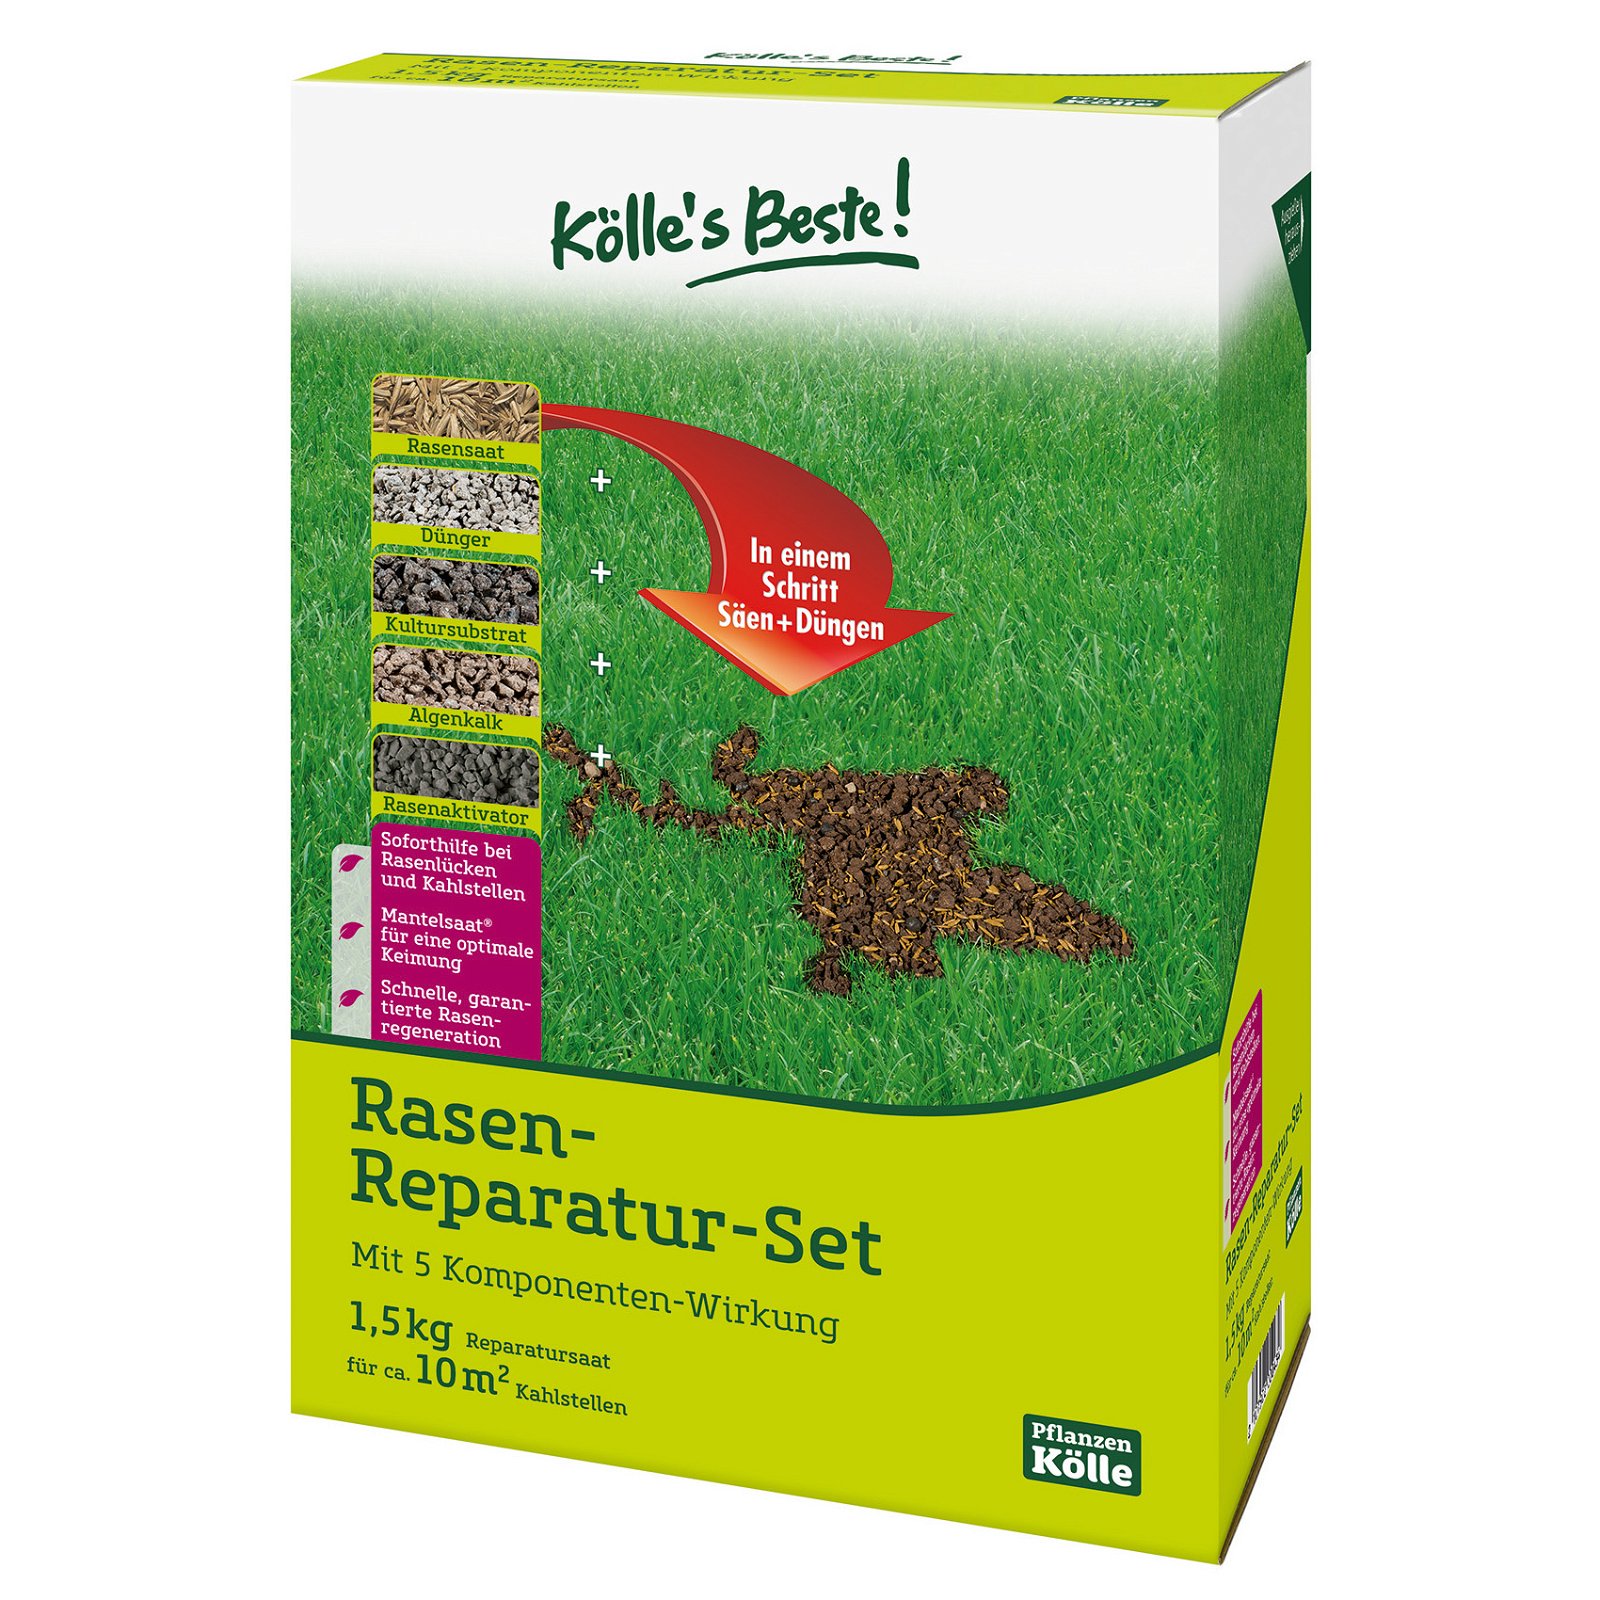 Kölle's Beste Rasen-Reparatur-Set mit 5 Komponenten-Wirkung, 1,5 kg